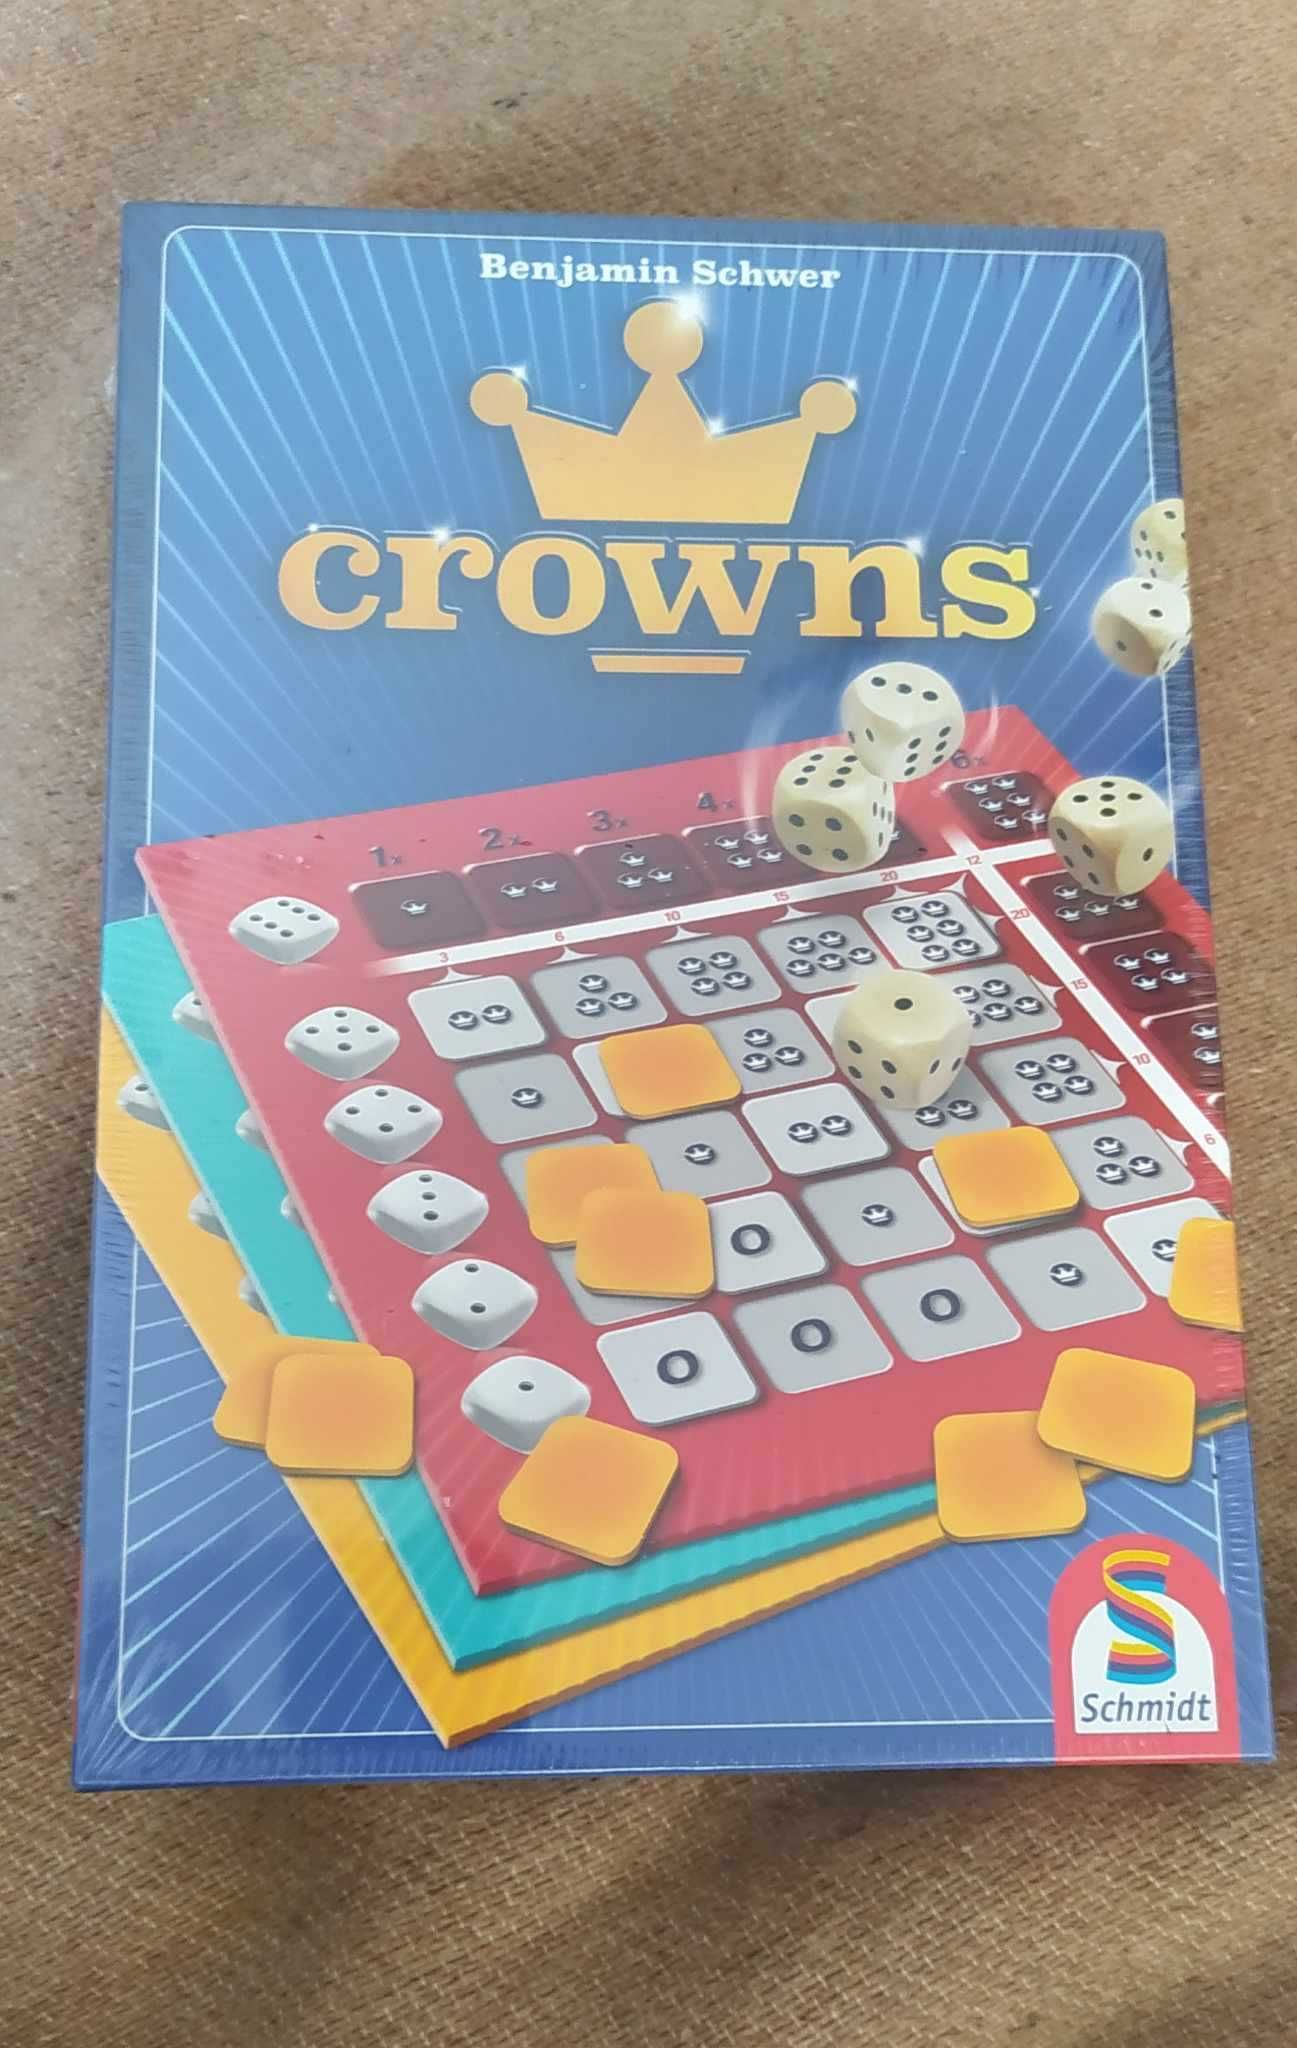 joc nou Crowns de benjamin schwer